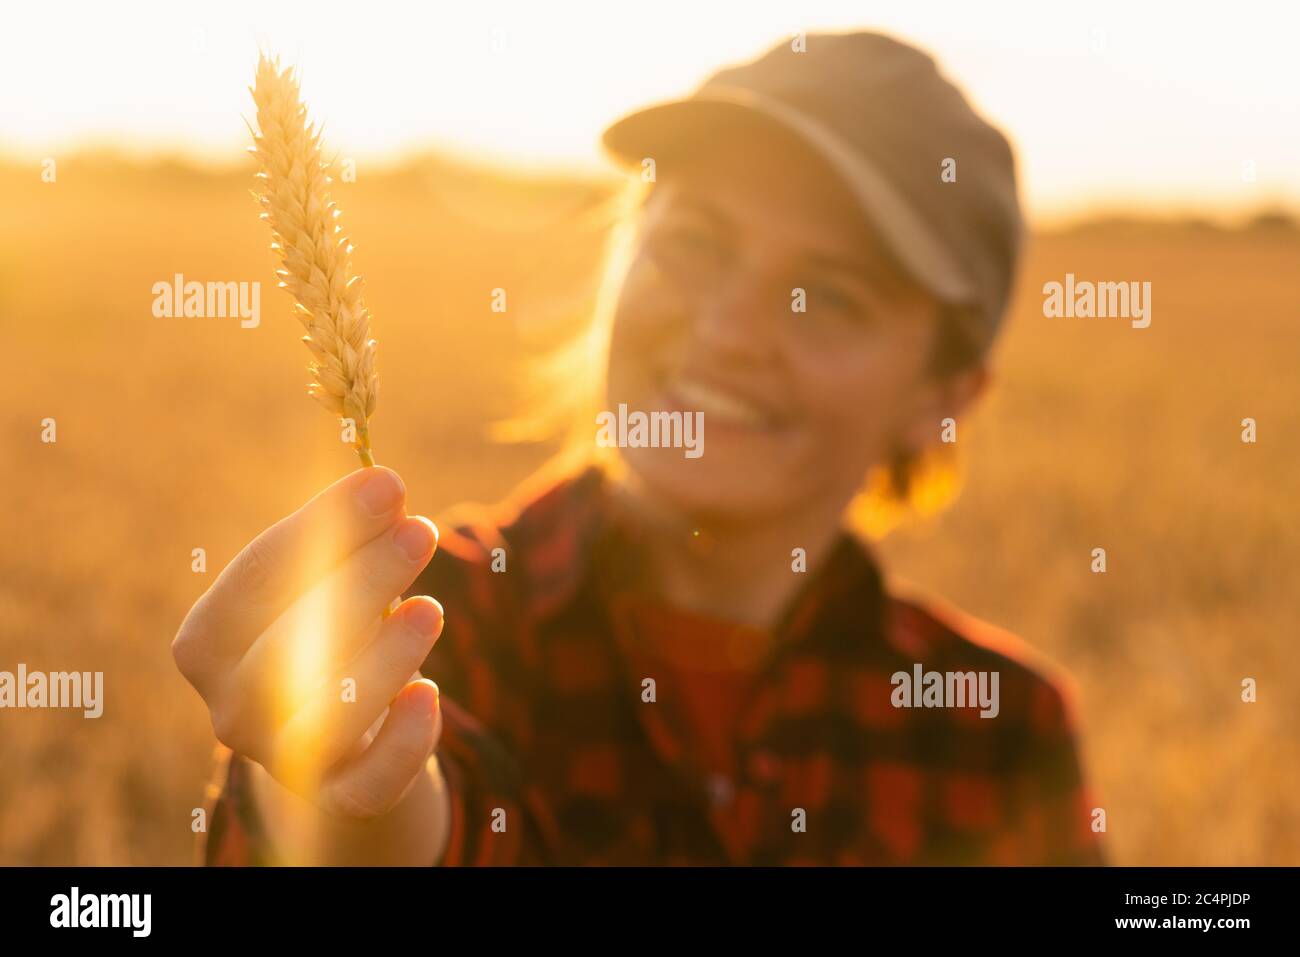 Una mujer campesina se encuentra en un campo agrícola al atardecer y mira una oreja de trigo. Foto de stock